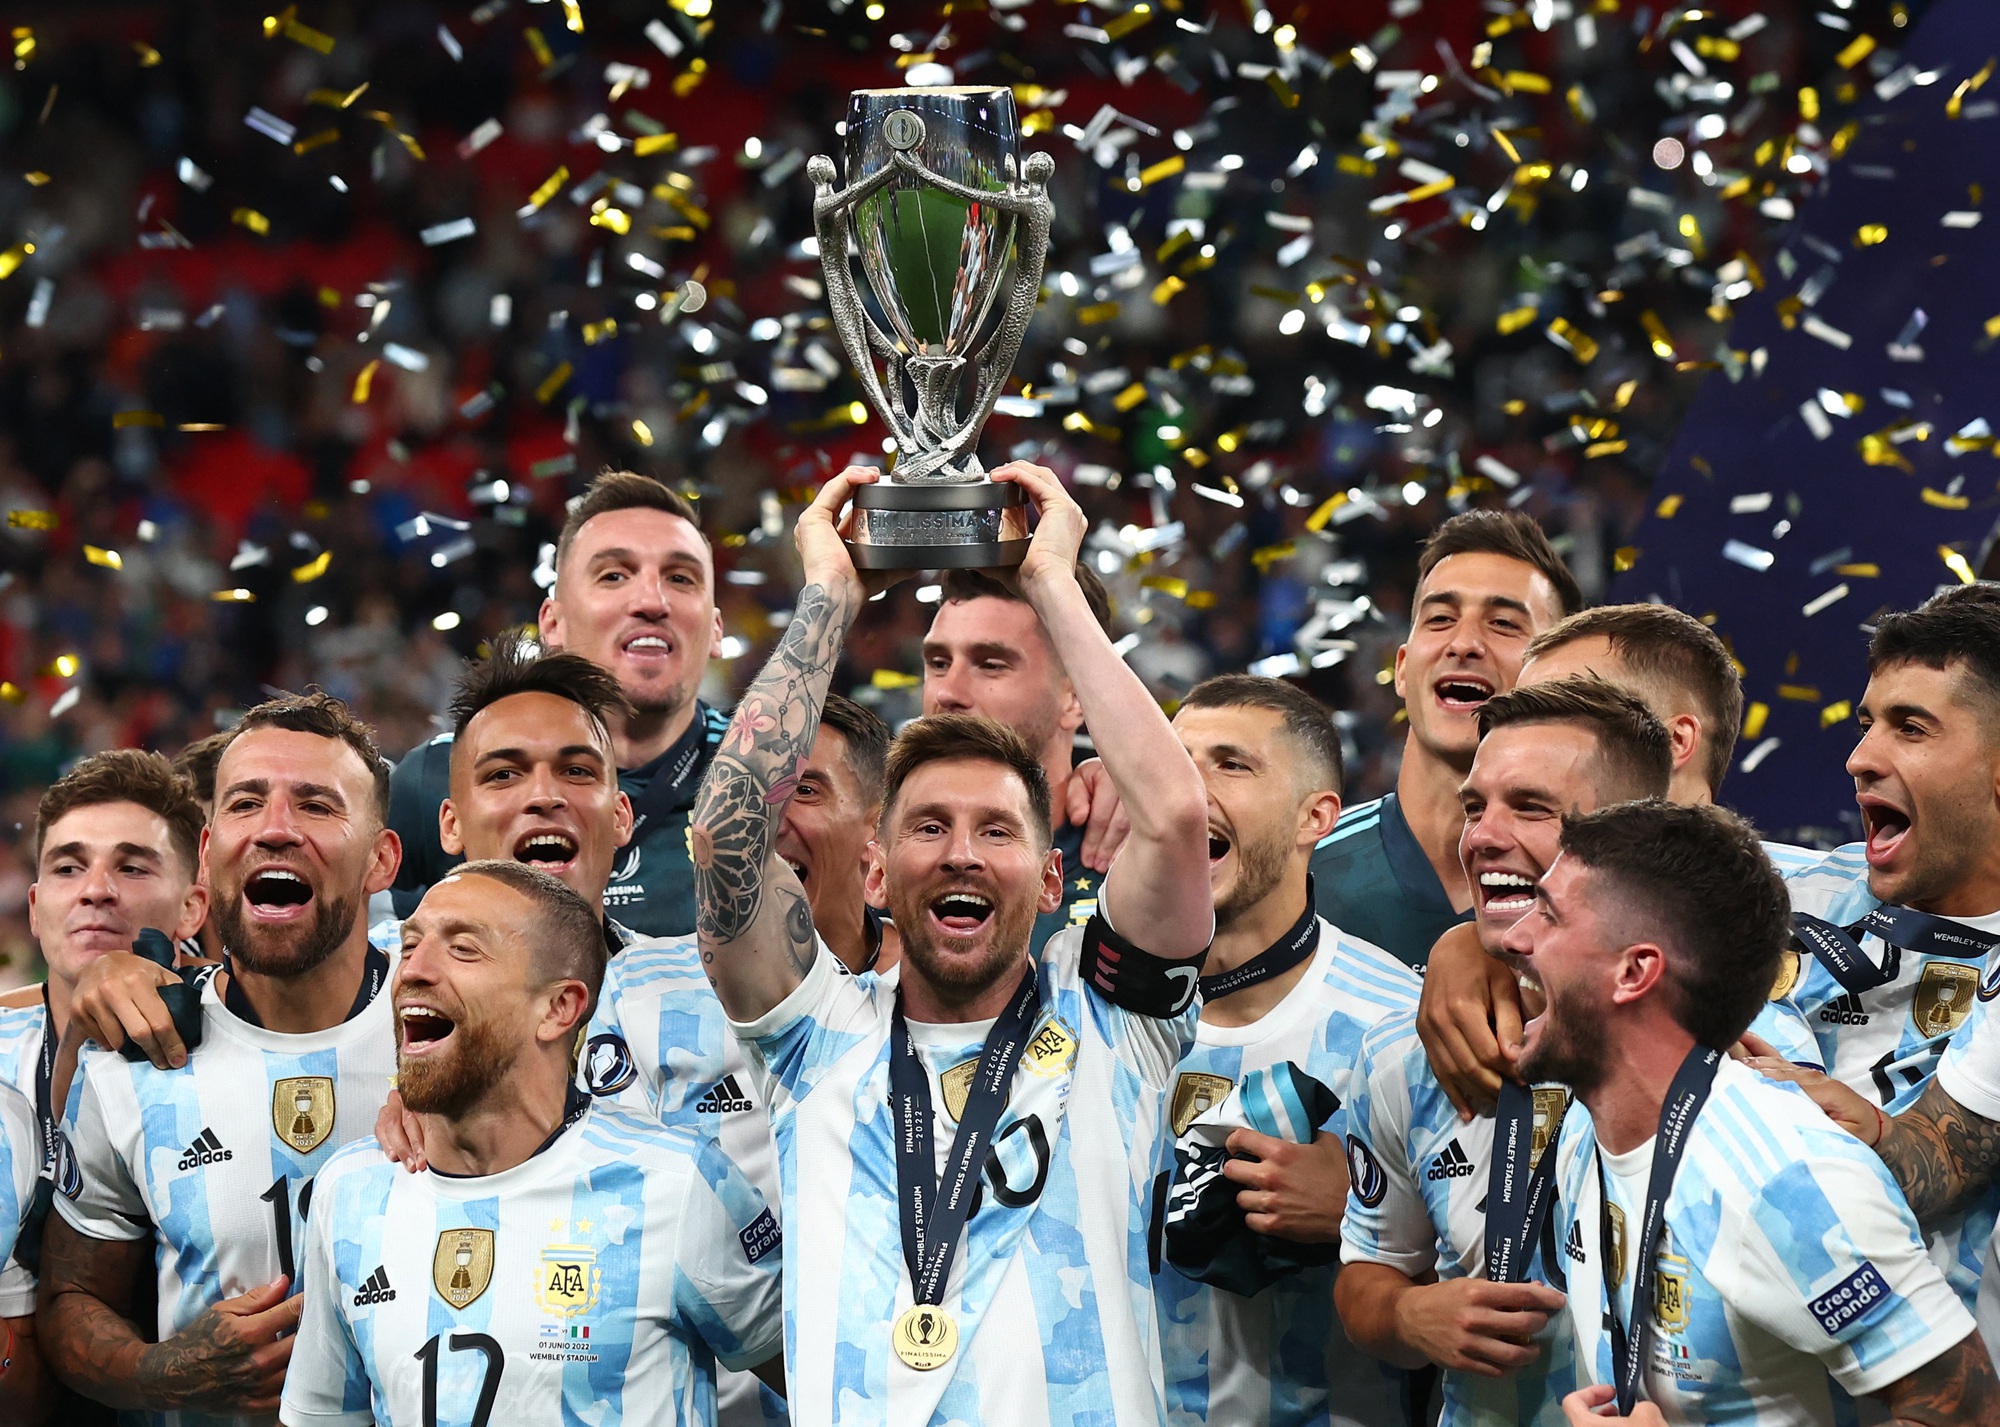 Đại thắng tuyển Ý để giành chiến thắng tại Siêu cúp Liên lục địa đã khiến người hâm mộ Argentina rất phấn khích, và chúng ta cũng nên tự hào về đội tuyển quốc gia của mình. Hãy nhìn vào các hình ảnh đầy cảm xúc này để đón nhận sự cổ vũ và hỗ trợ cho tuyển Argentina nào!